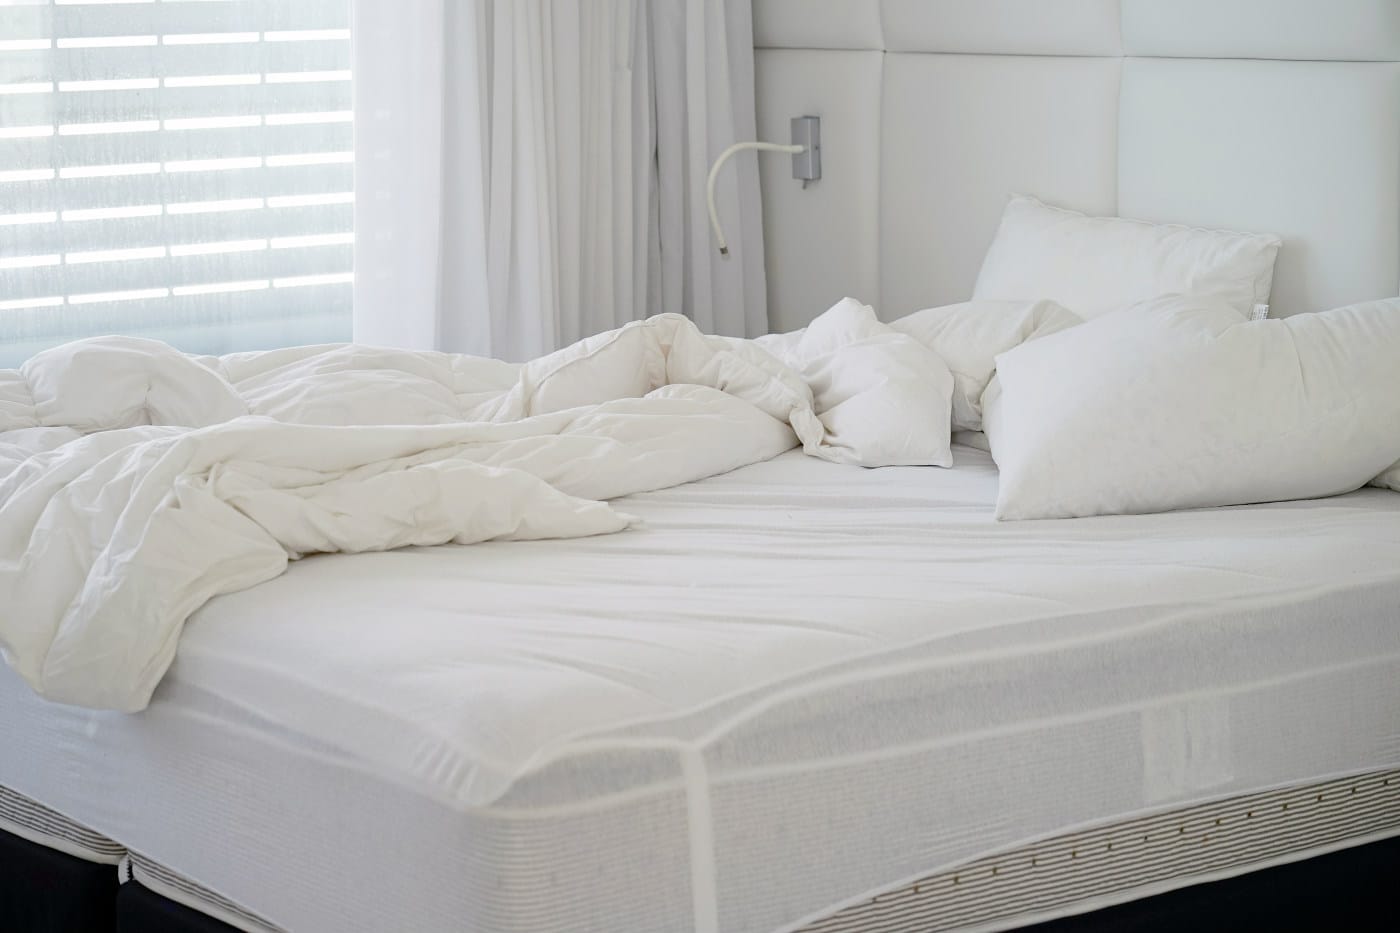 bed mattress for elderly